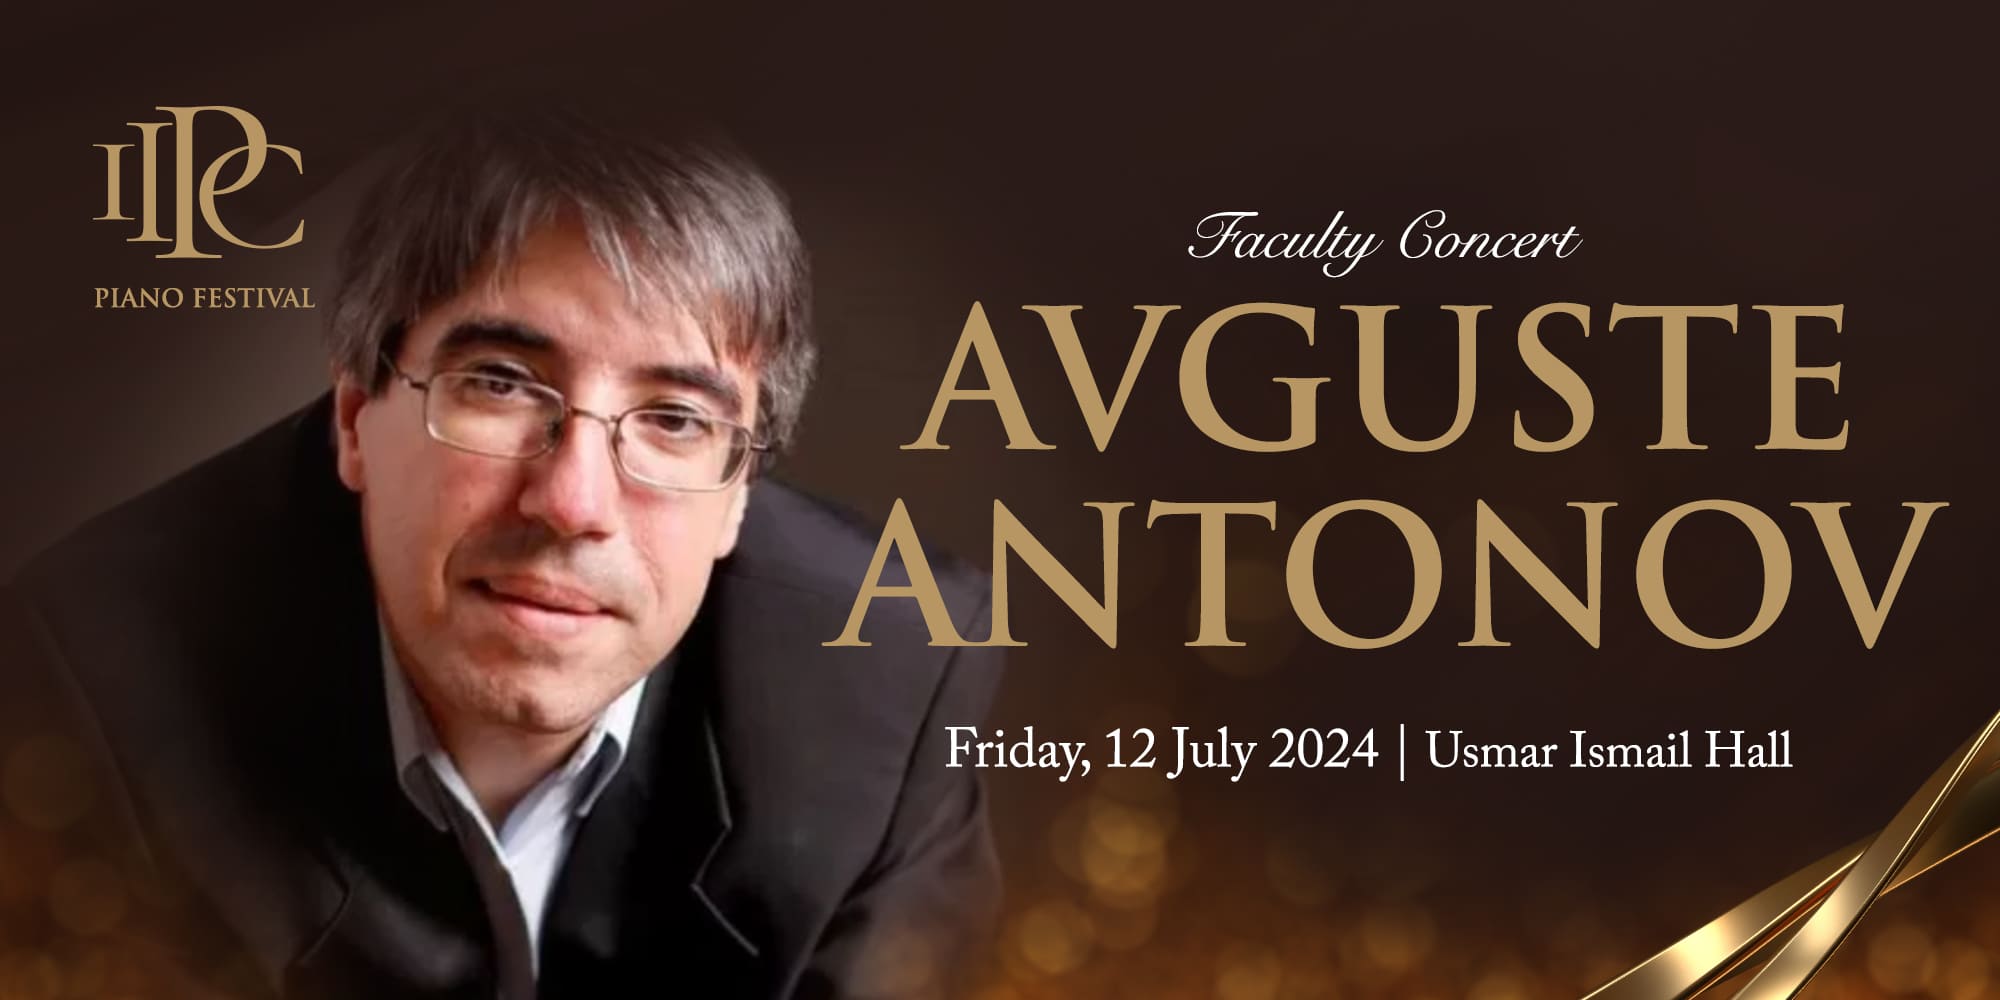 Faculty Concert Avguste Antonov